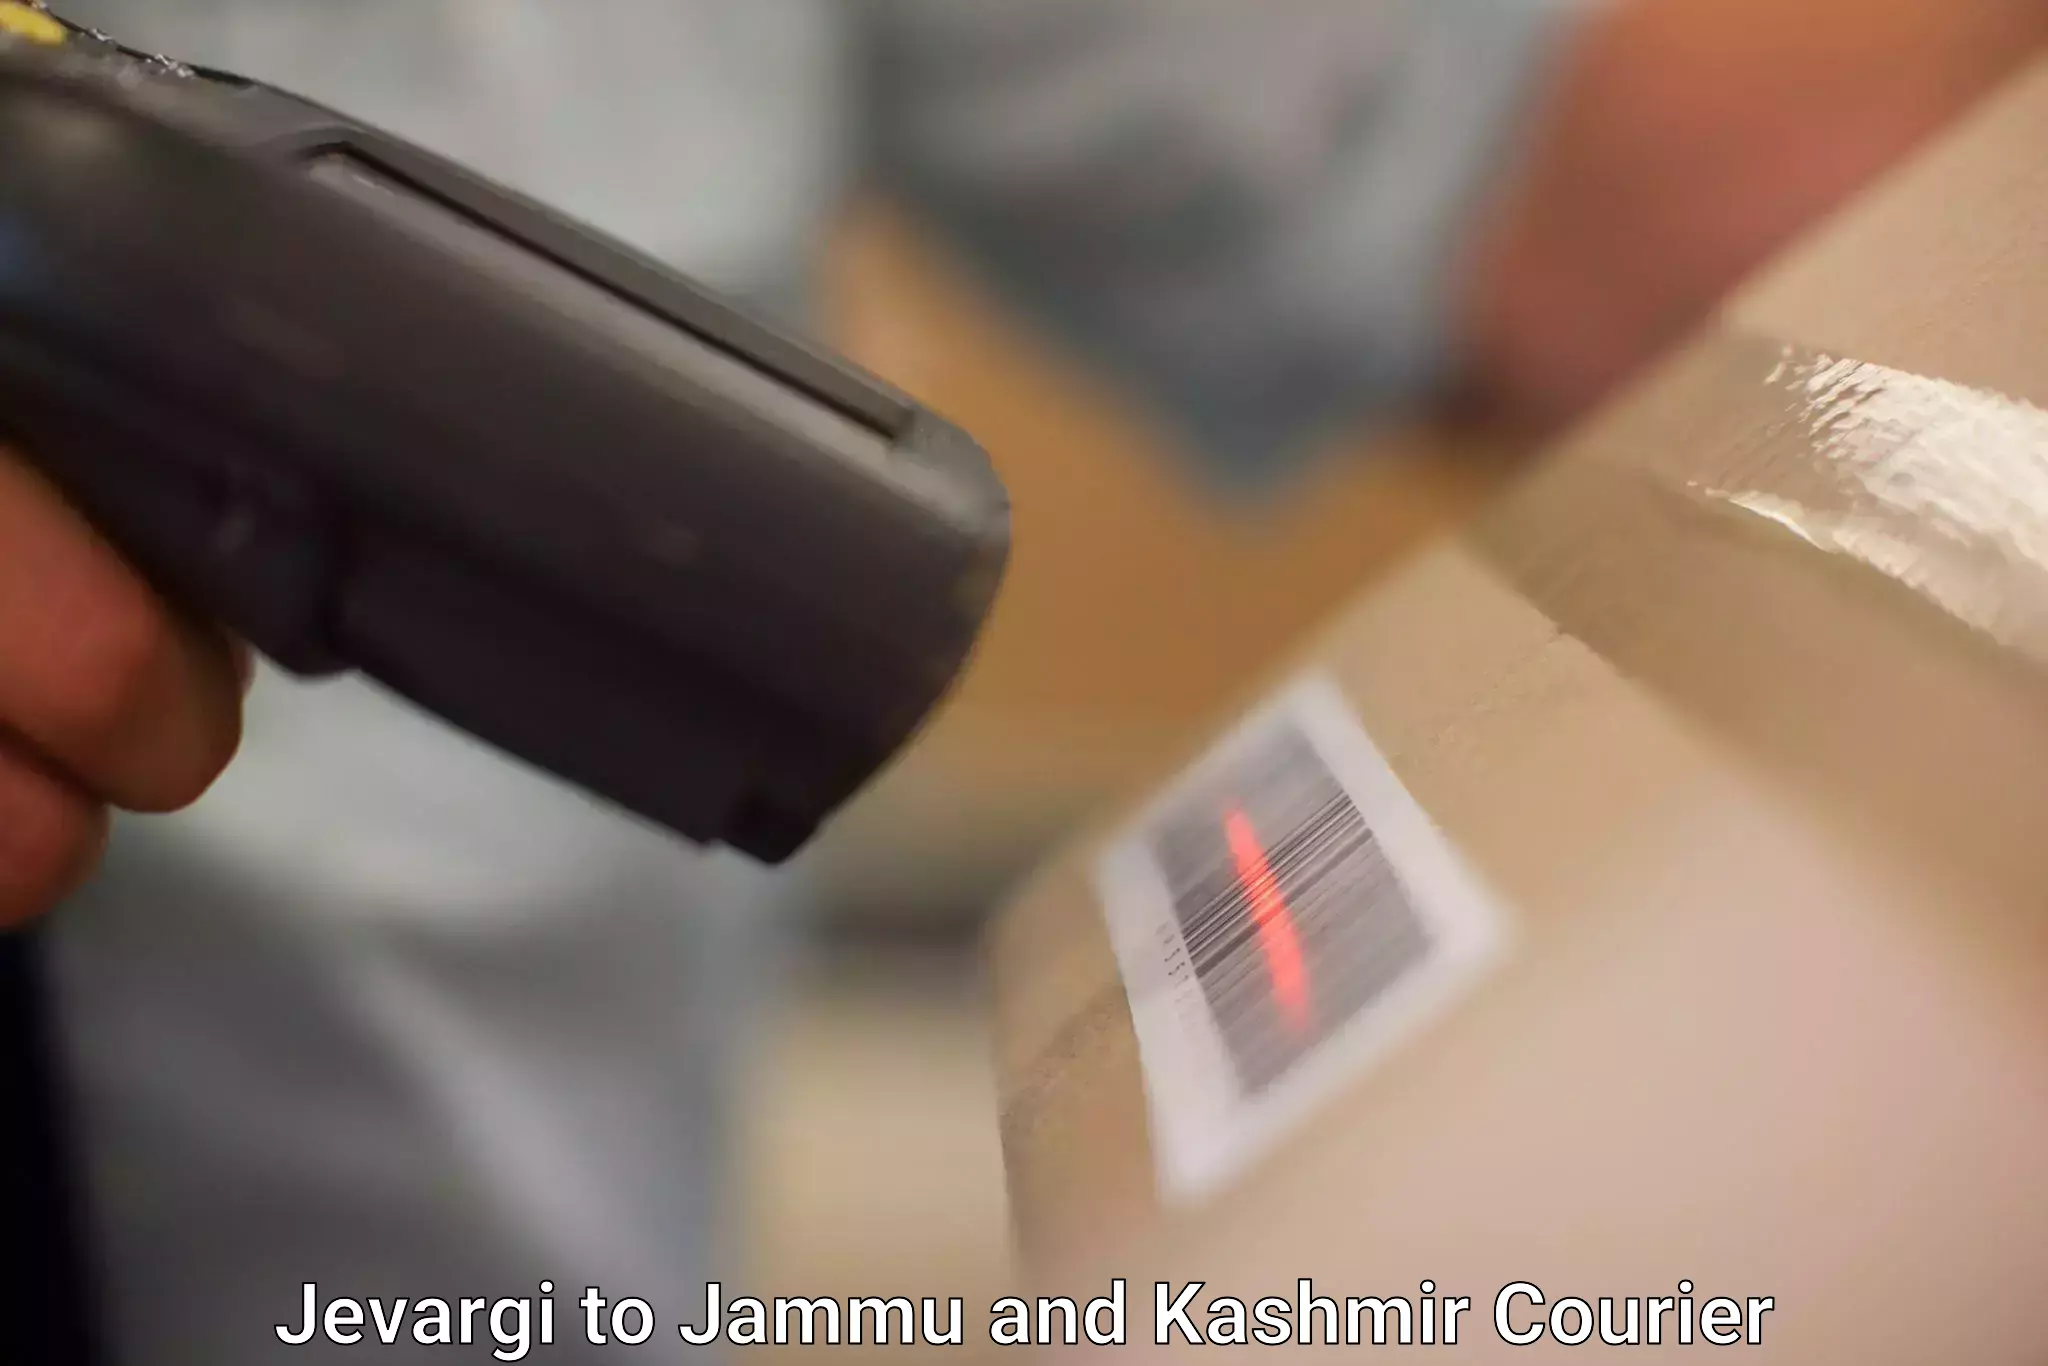 High-speed parcel service Jevargi to Akhnoor